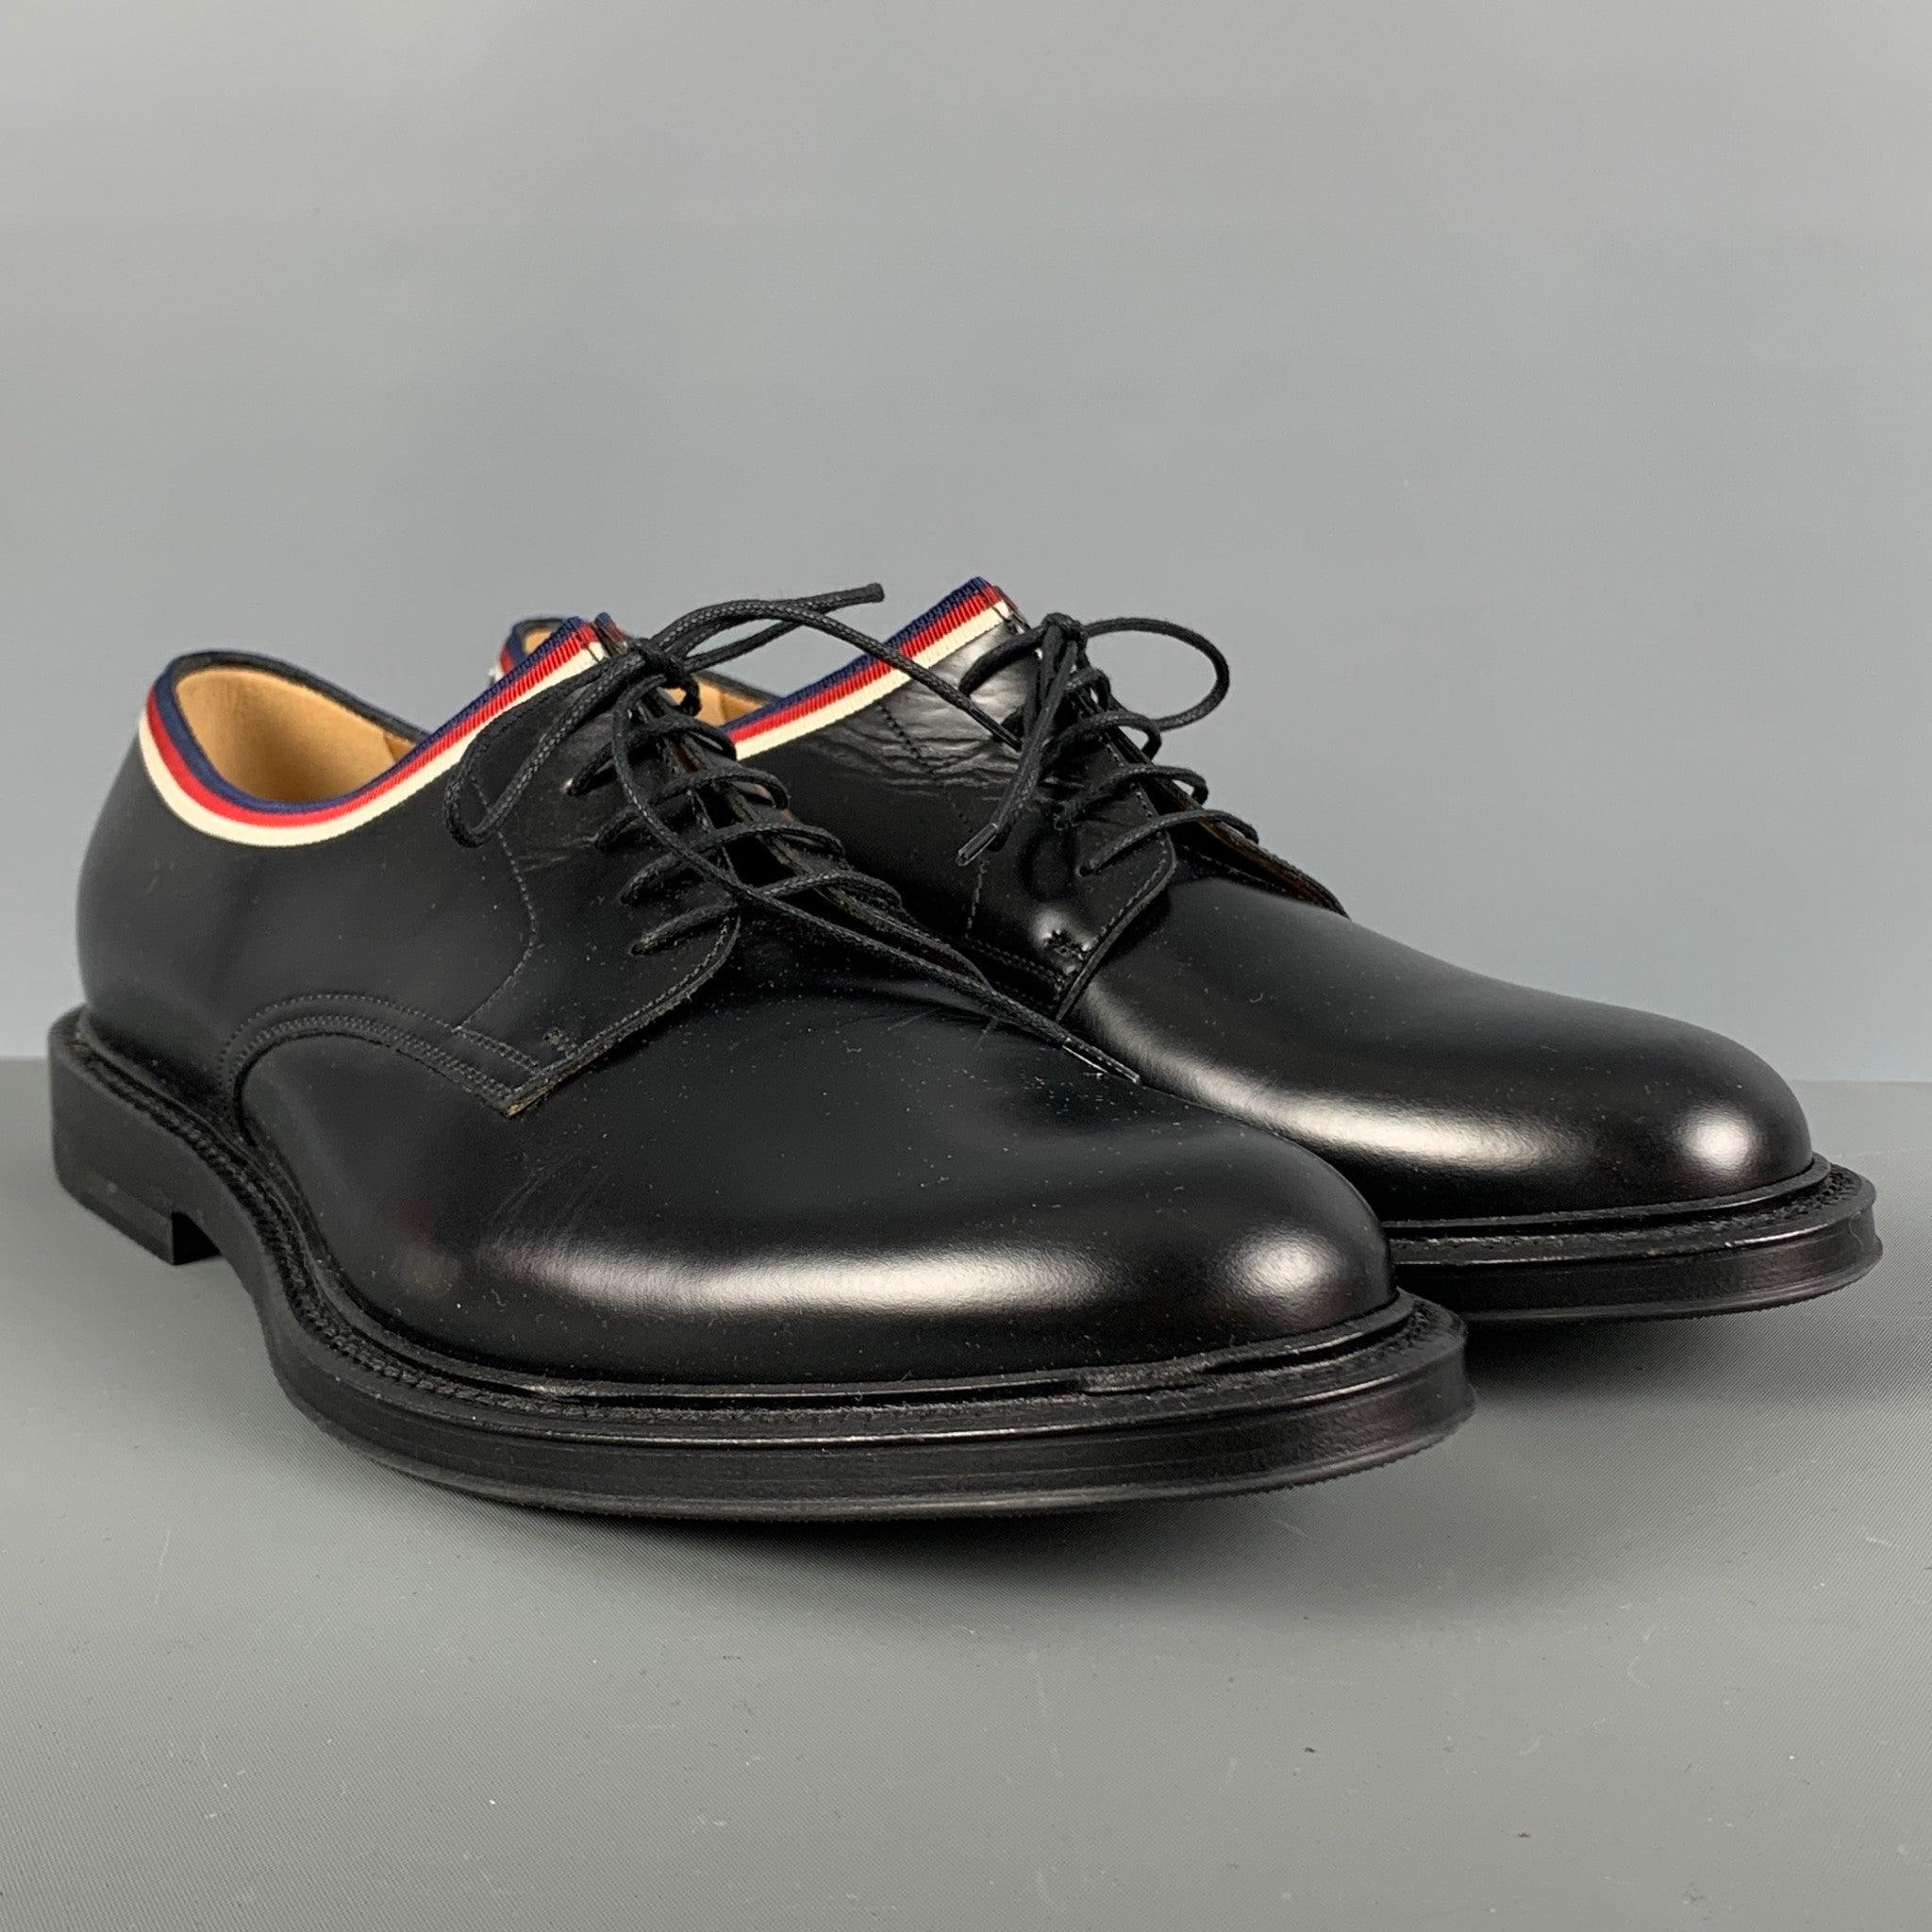 GUCCI-Schuhe aus schwarzem Leder im Derby-Stil mit blauen, roten und weißen Bändern und Schnürverschluss. Made in Italy Ausgezeichneter Pre-Owned Zustand. 

Markiert:   472749 91/2 04JAußensohle: 12,5 Zoll  x 4,75 Zoll 
  
  
 
Referenz: